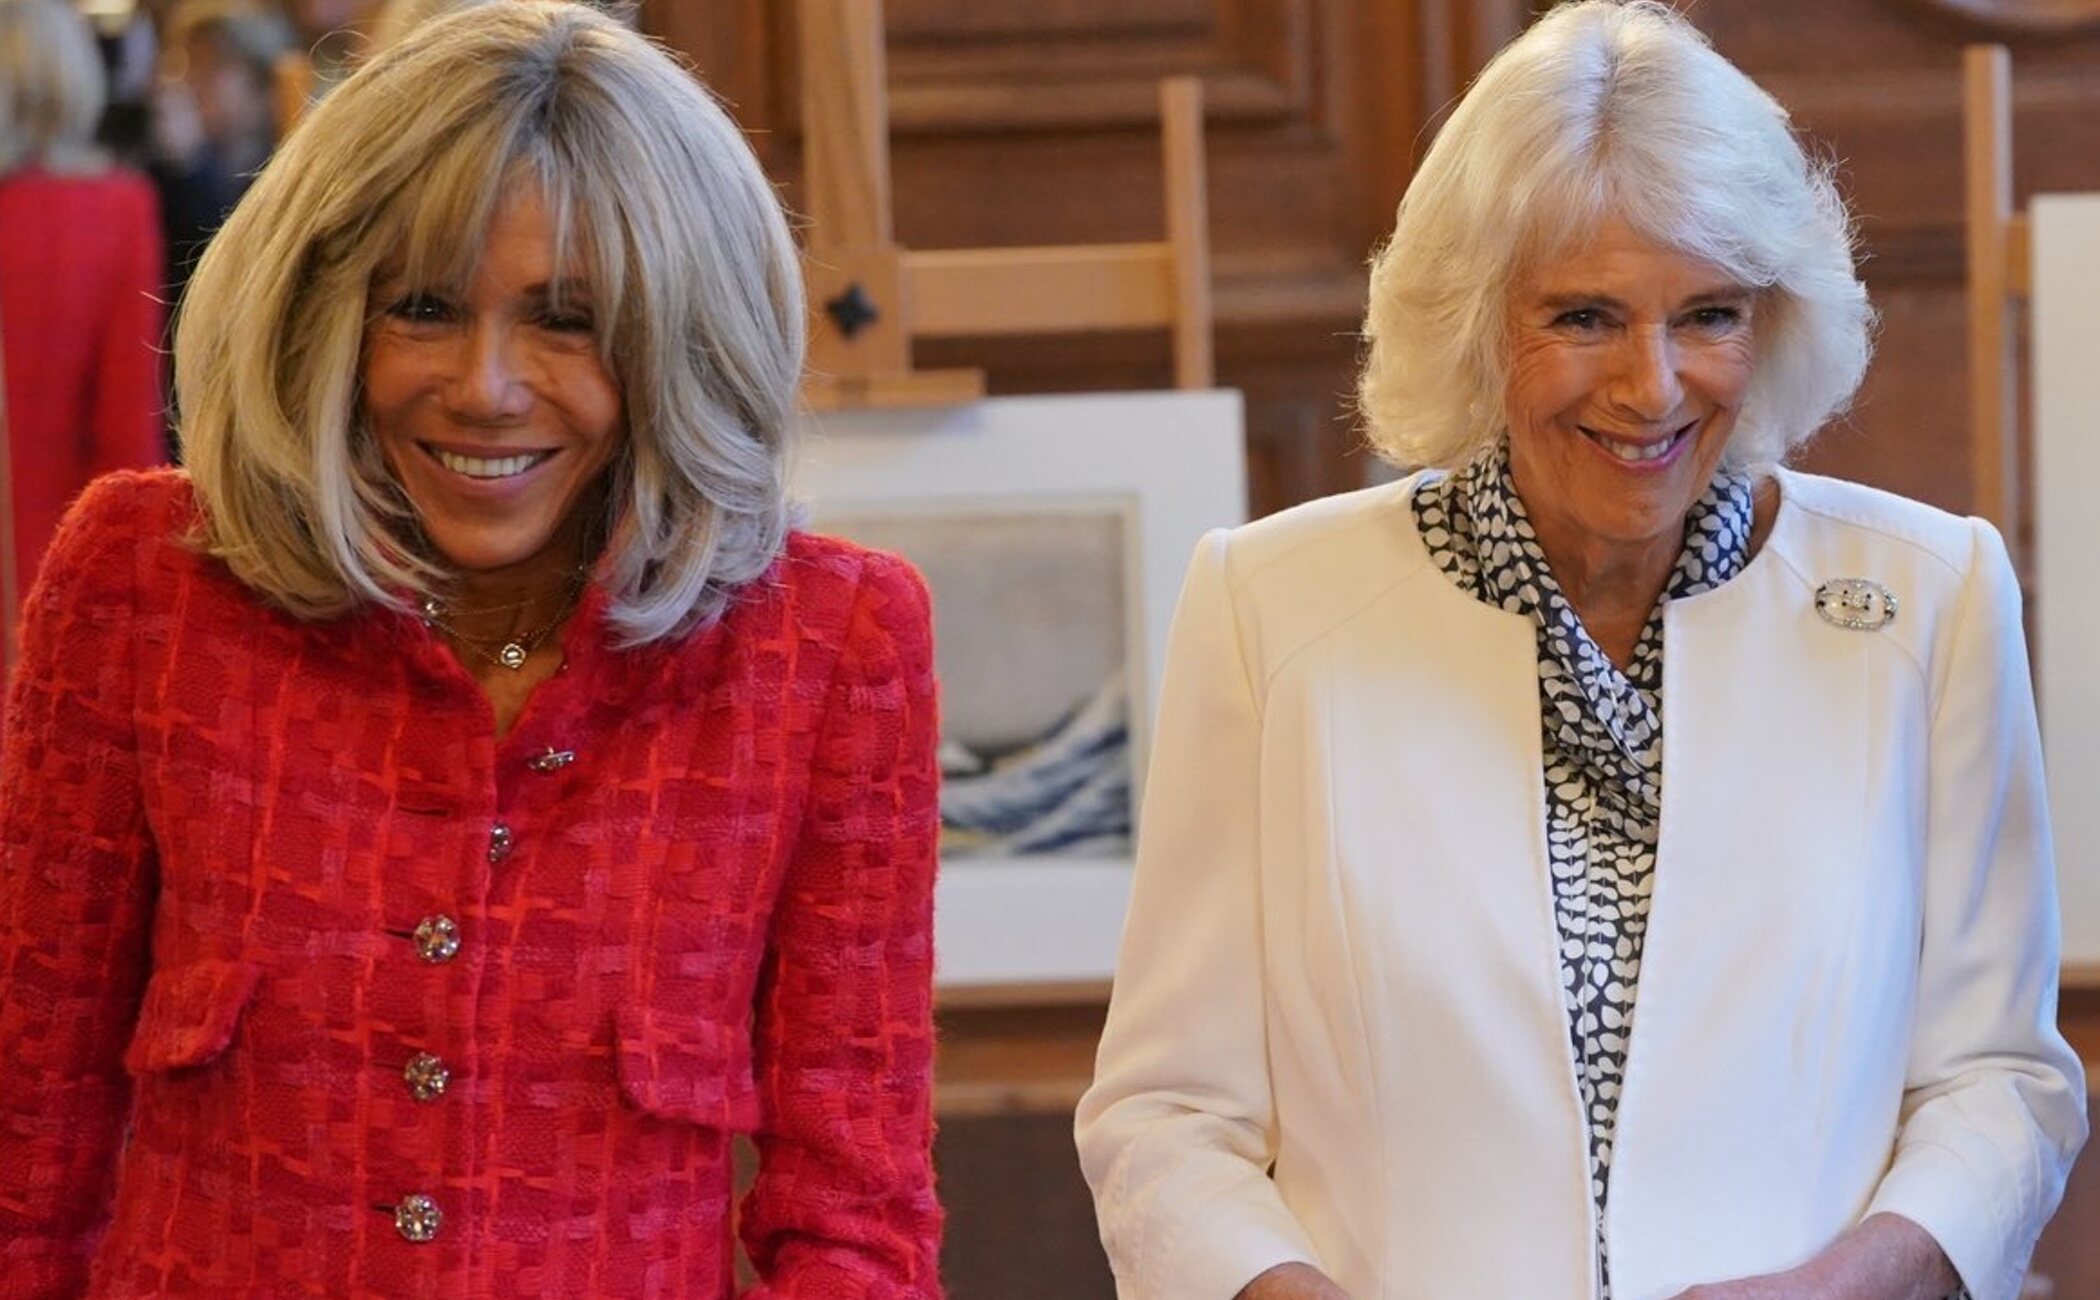 El momentazo de Camilla junto a Brigitte Macron